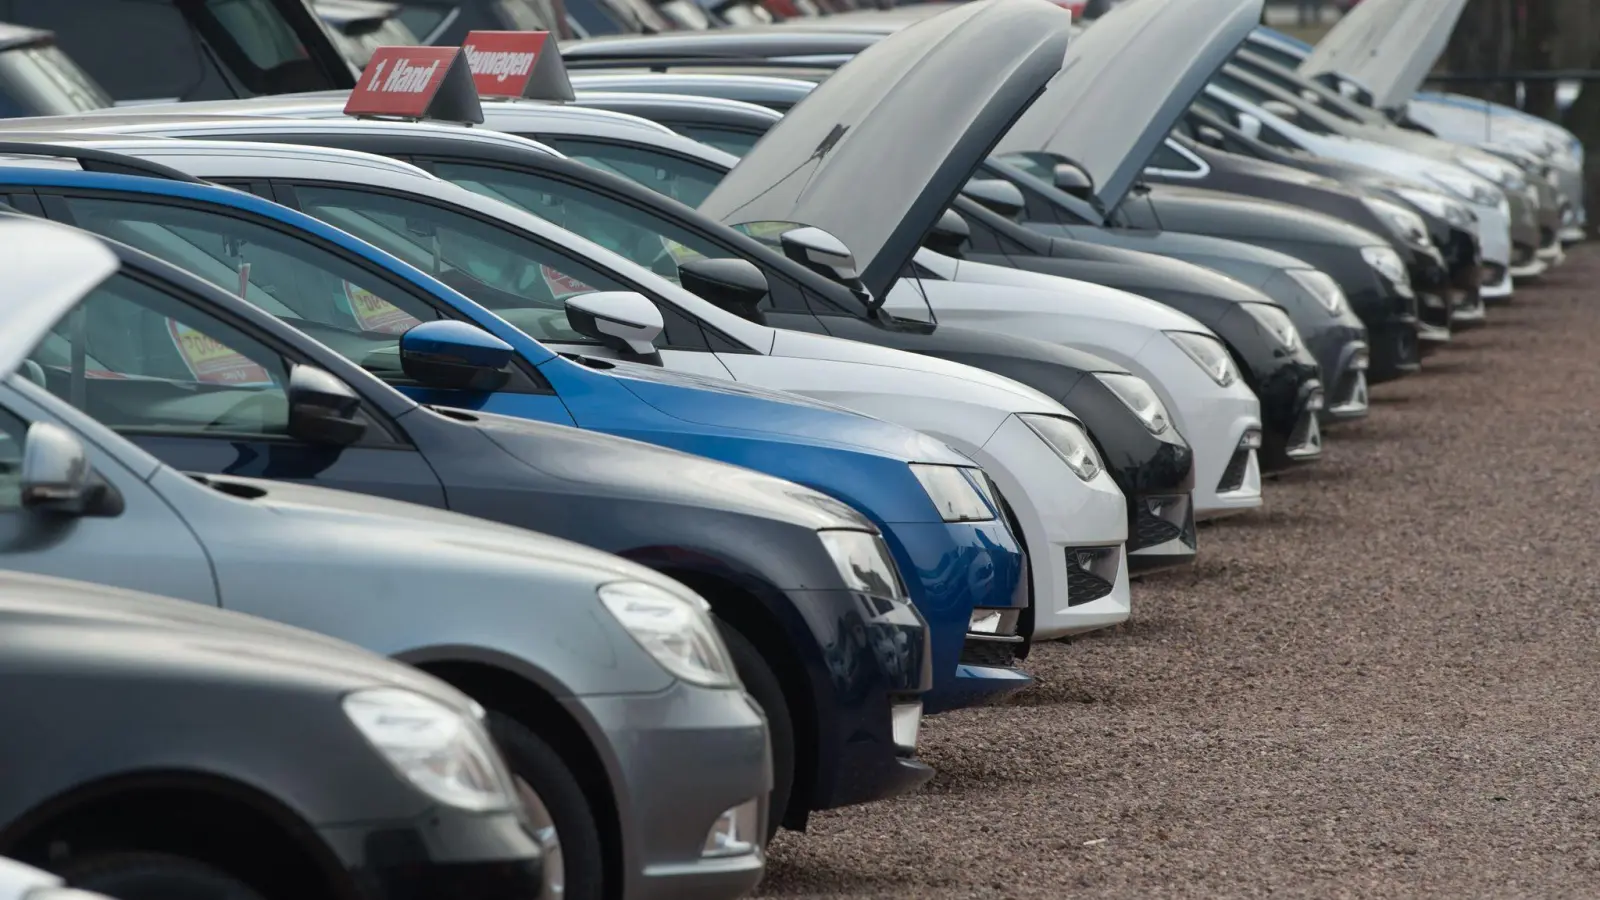 Der Bundesgerichtshof (BGH) hat ein Urteil zu Betrügereien beim Gebrauchtwagen-Kauf gefällt und damit Käufern den Rücken gestärkt. (Foto: Sebastian Kahnert/dpa-Zentralbild/dpa)